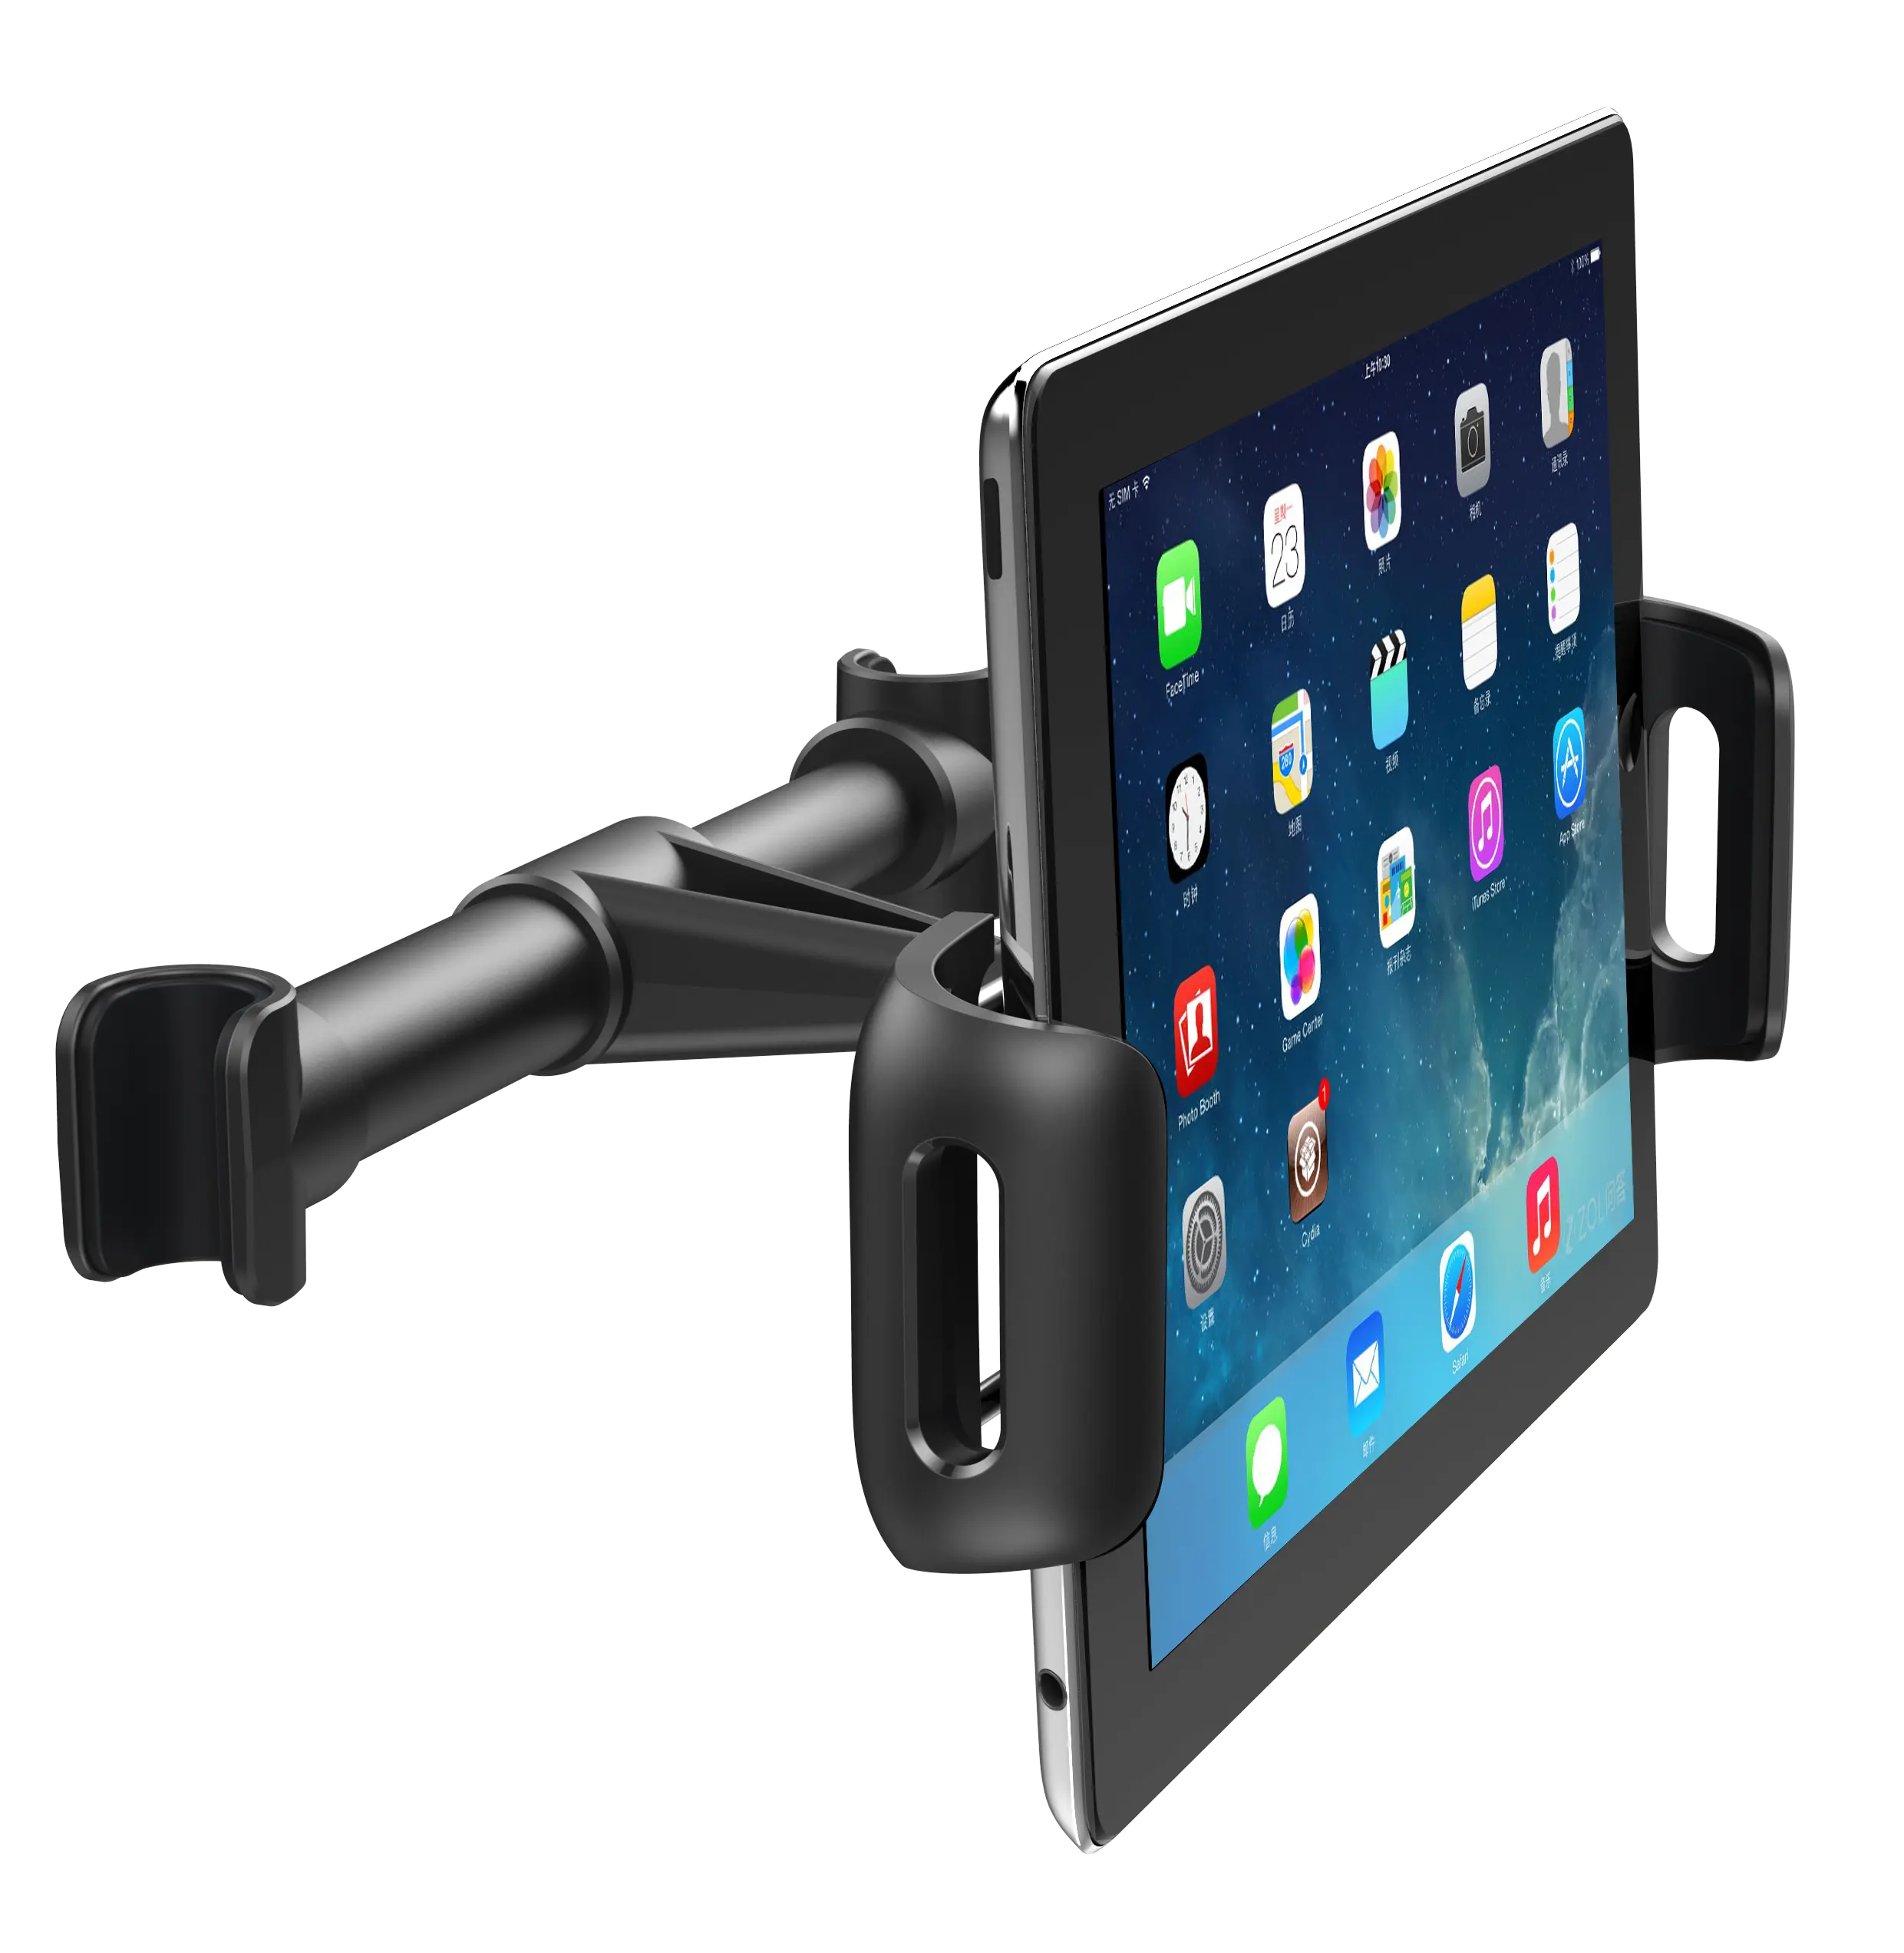 Bantal tablet 10 inci, dudukan kepala sandaran mobil Universal dapat dilipat fleksibel dapat disesuaikan, dudukan bantal tablet